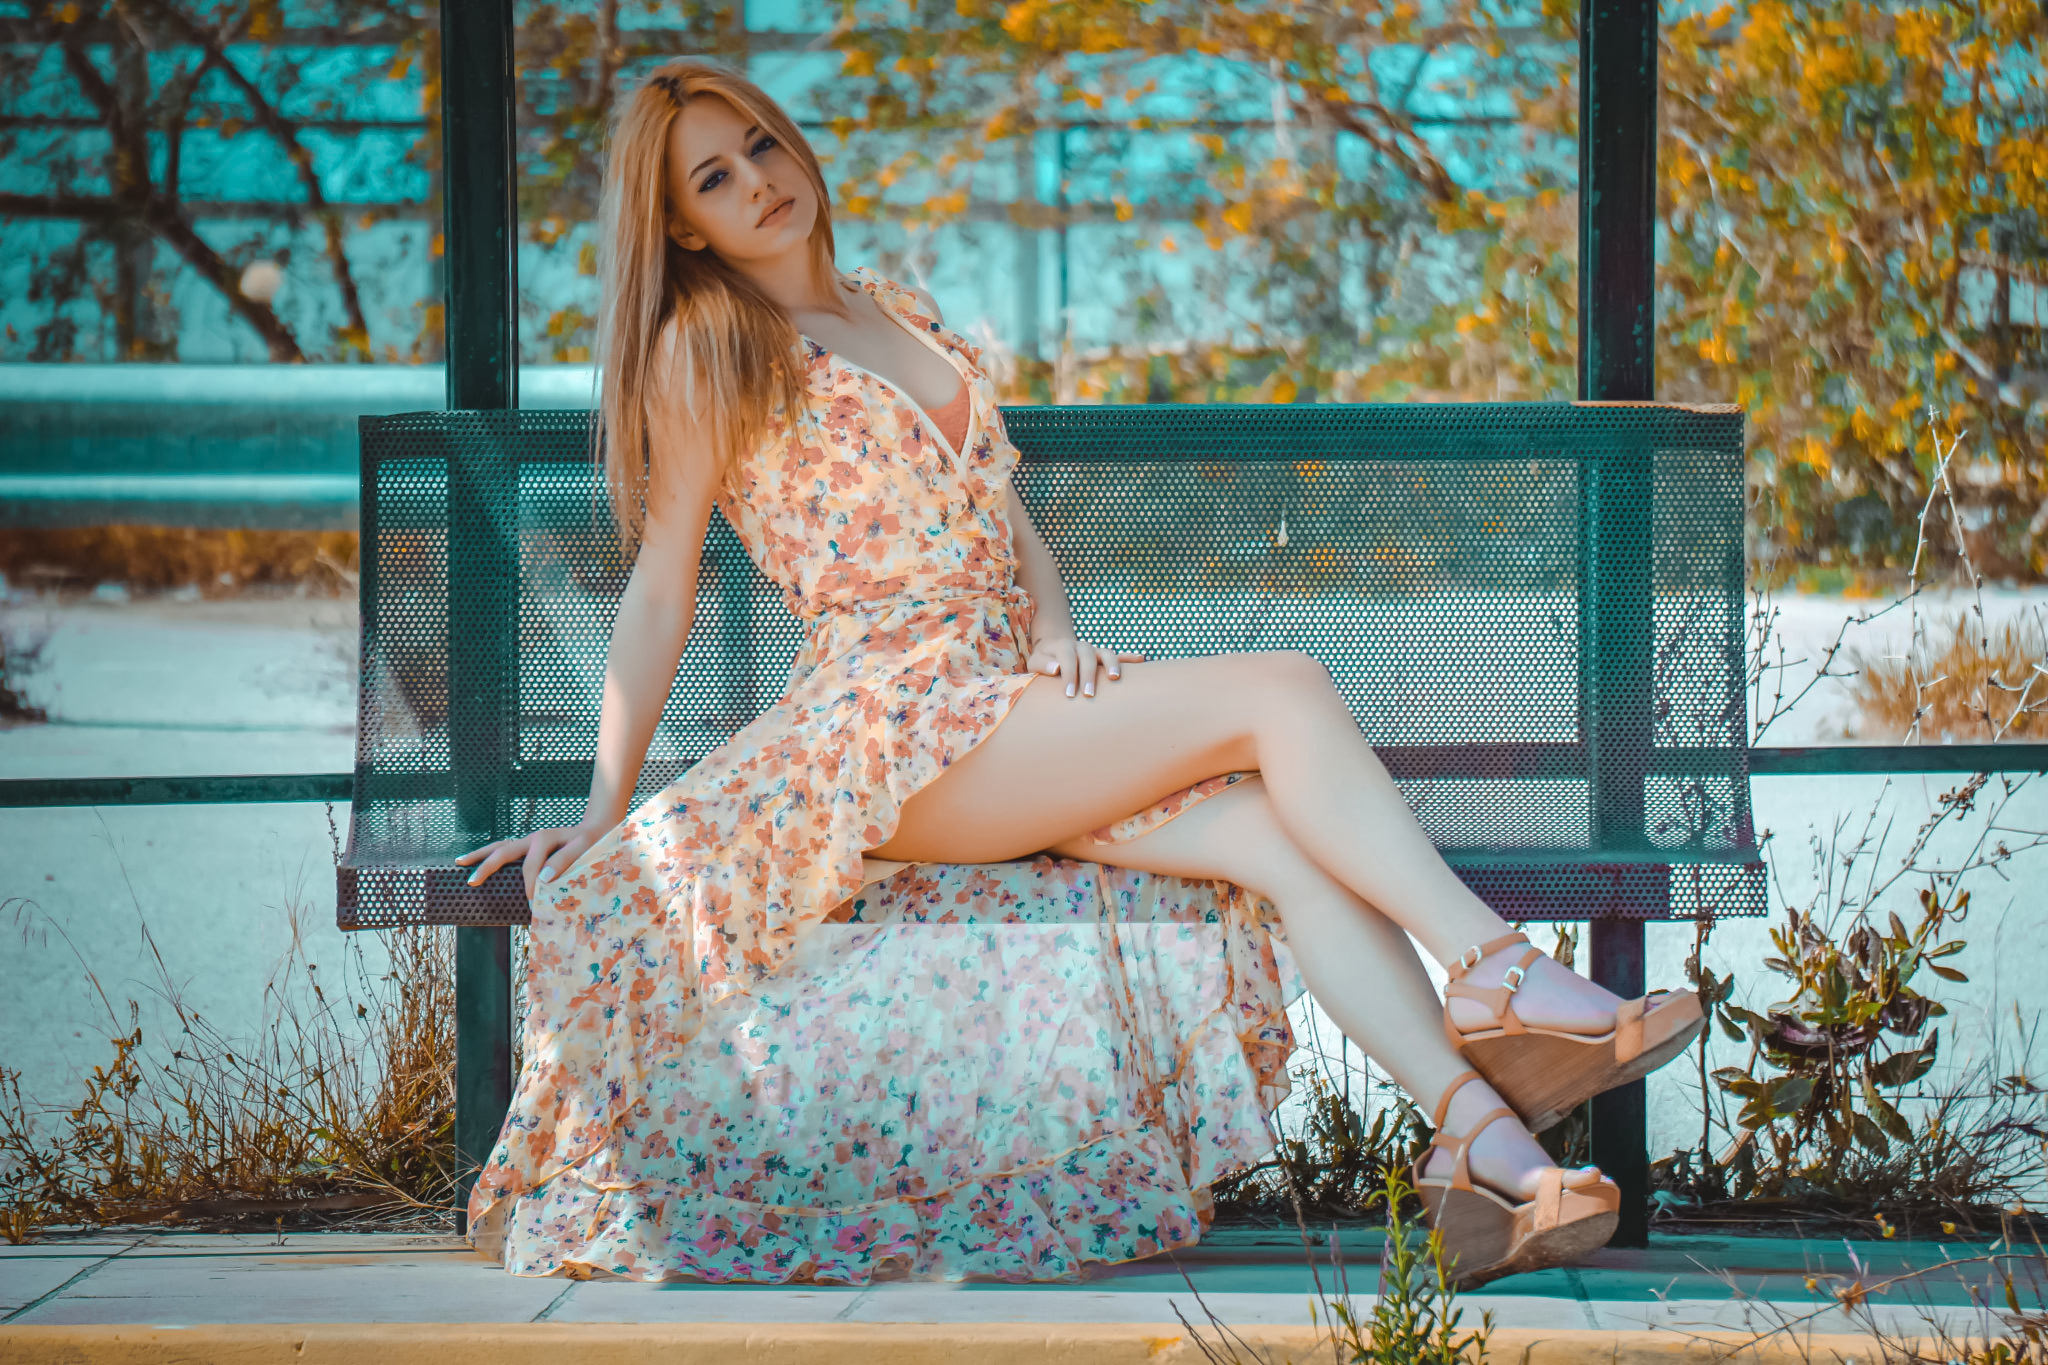 Artur Kurjan Women Blonde Dress Flower Dress Legs Bench Outdoors Wedge Heels 2048x1365